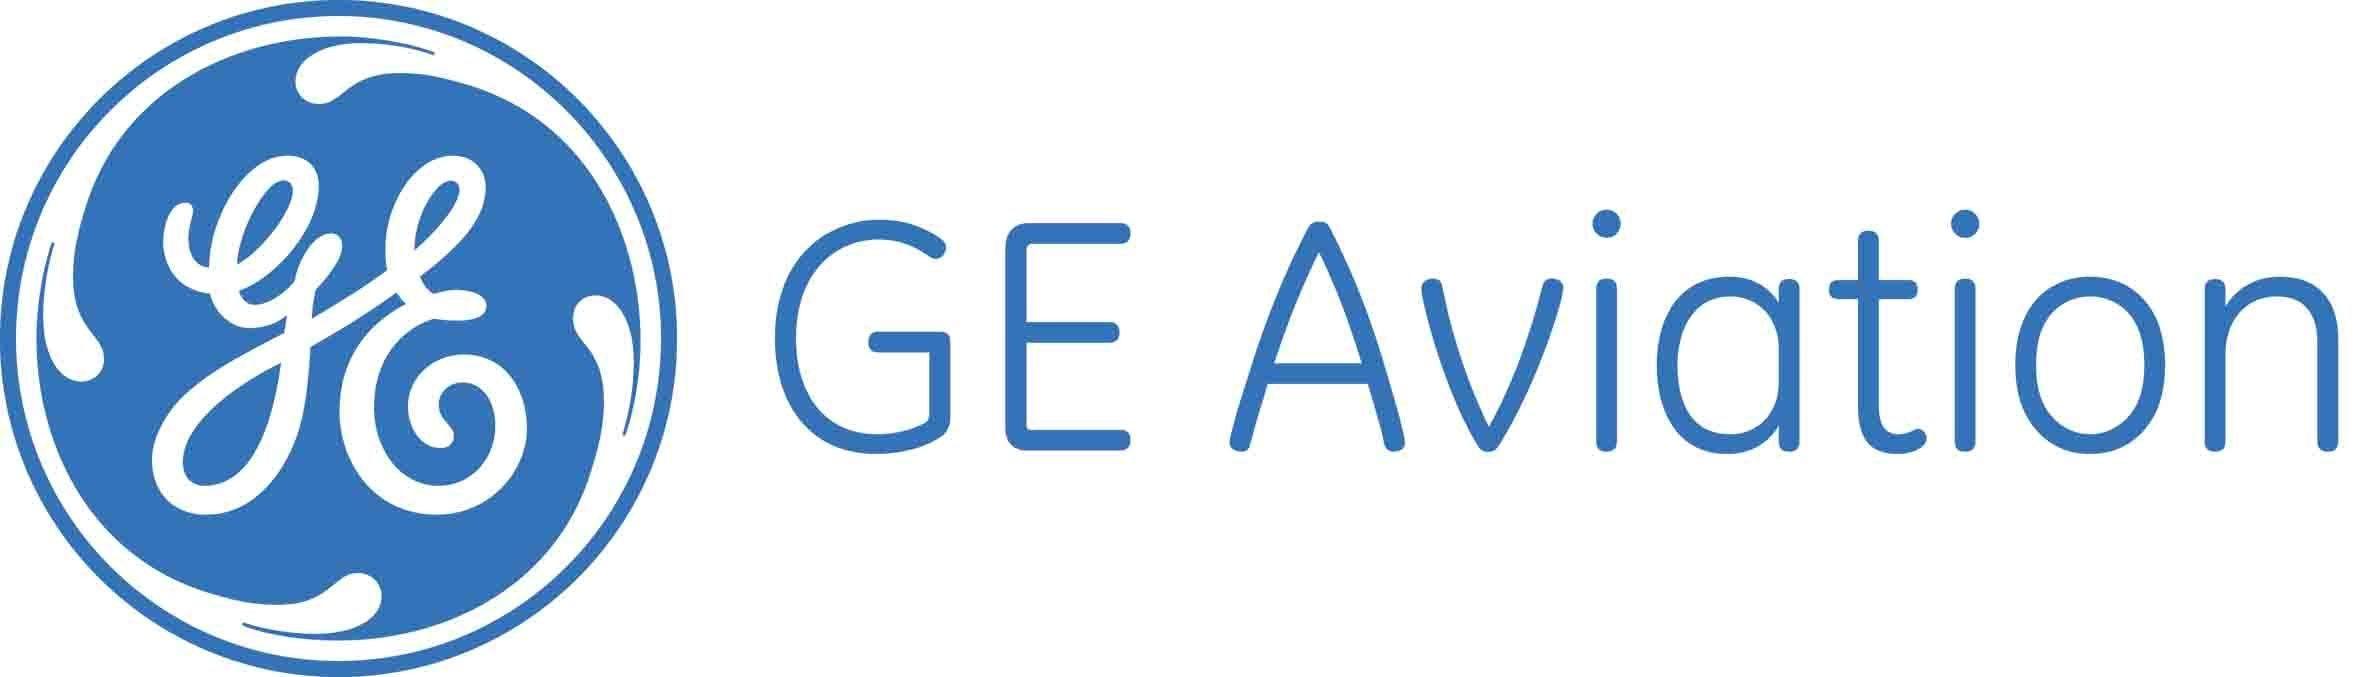 GE Aviation Logo - GE Aviation logo darker blue - Rockford, Illinois, USA - Rockford ...